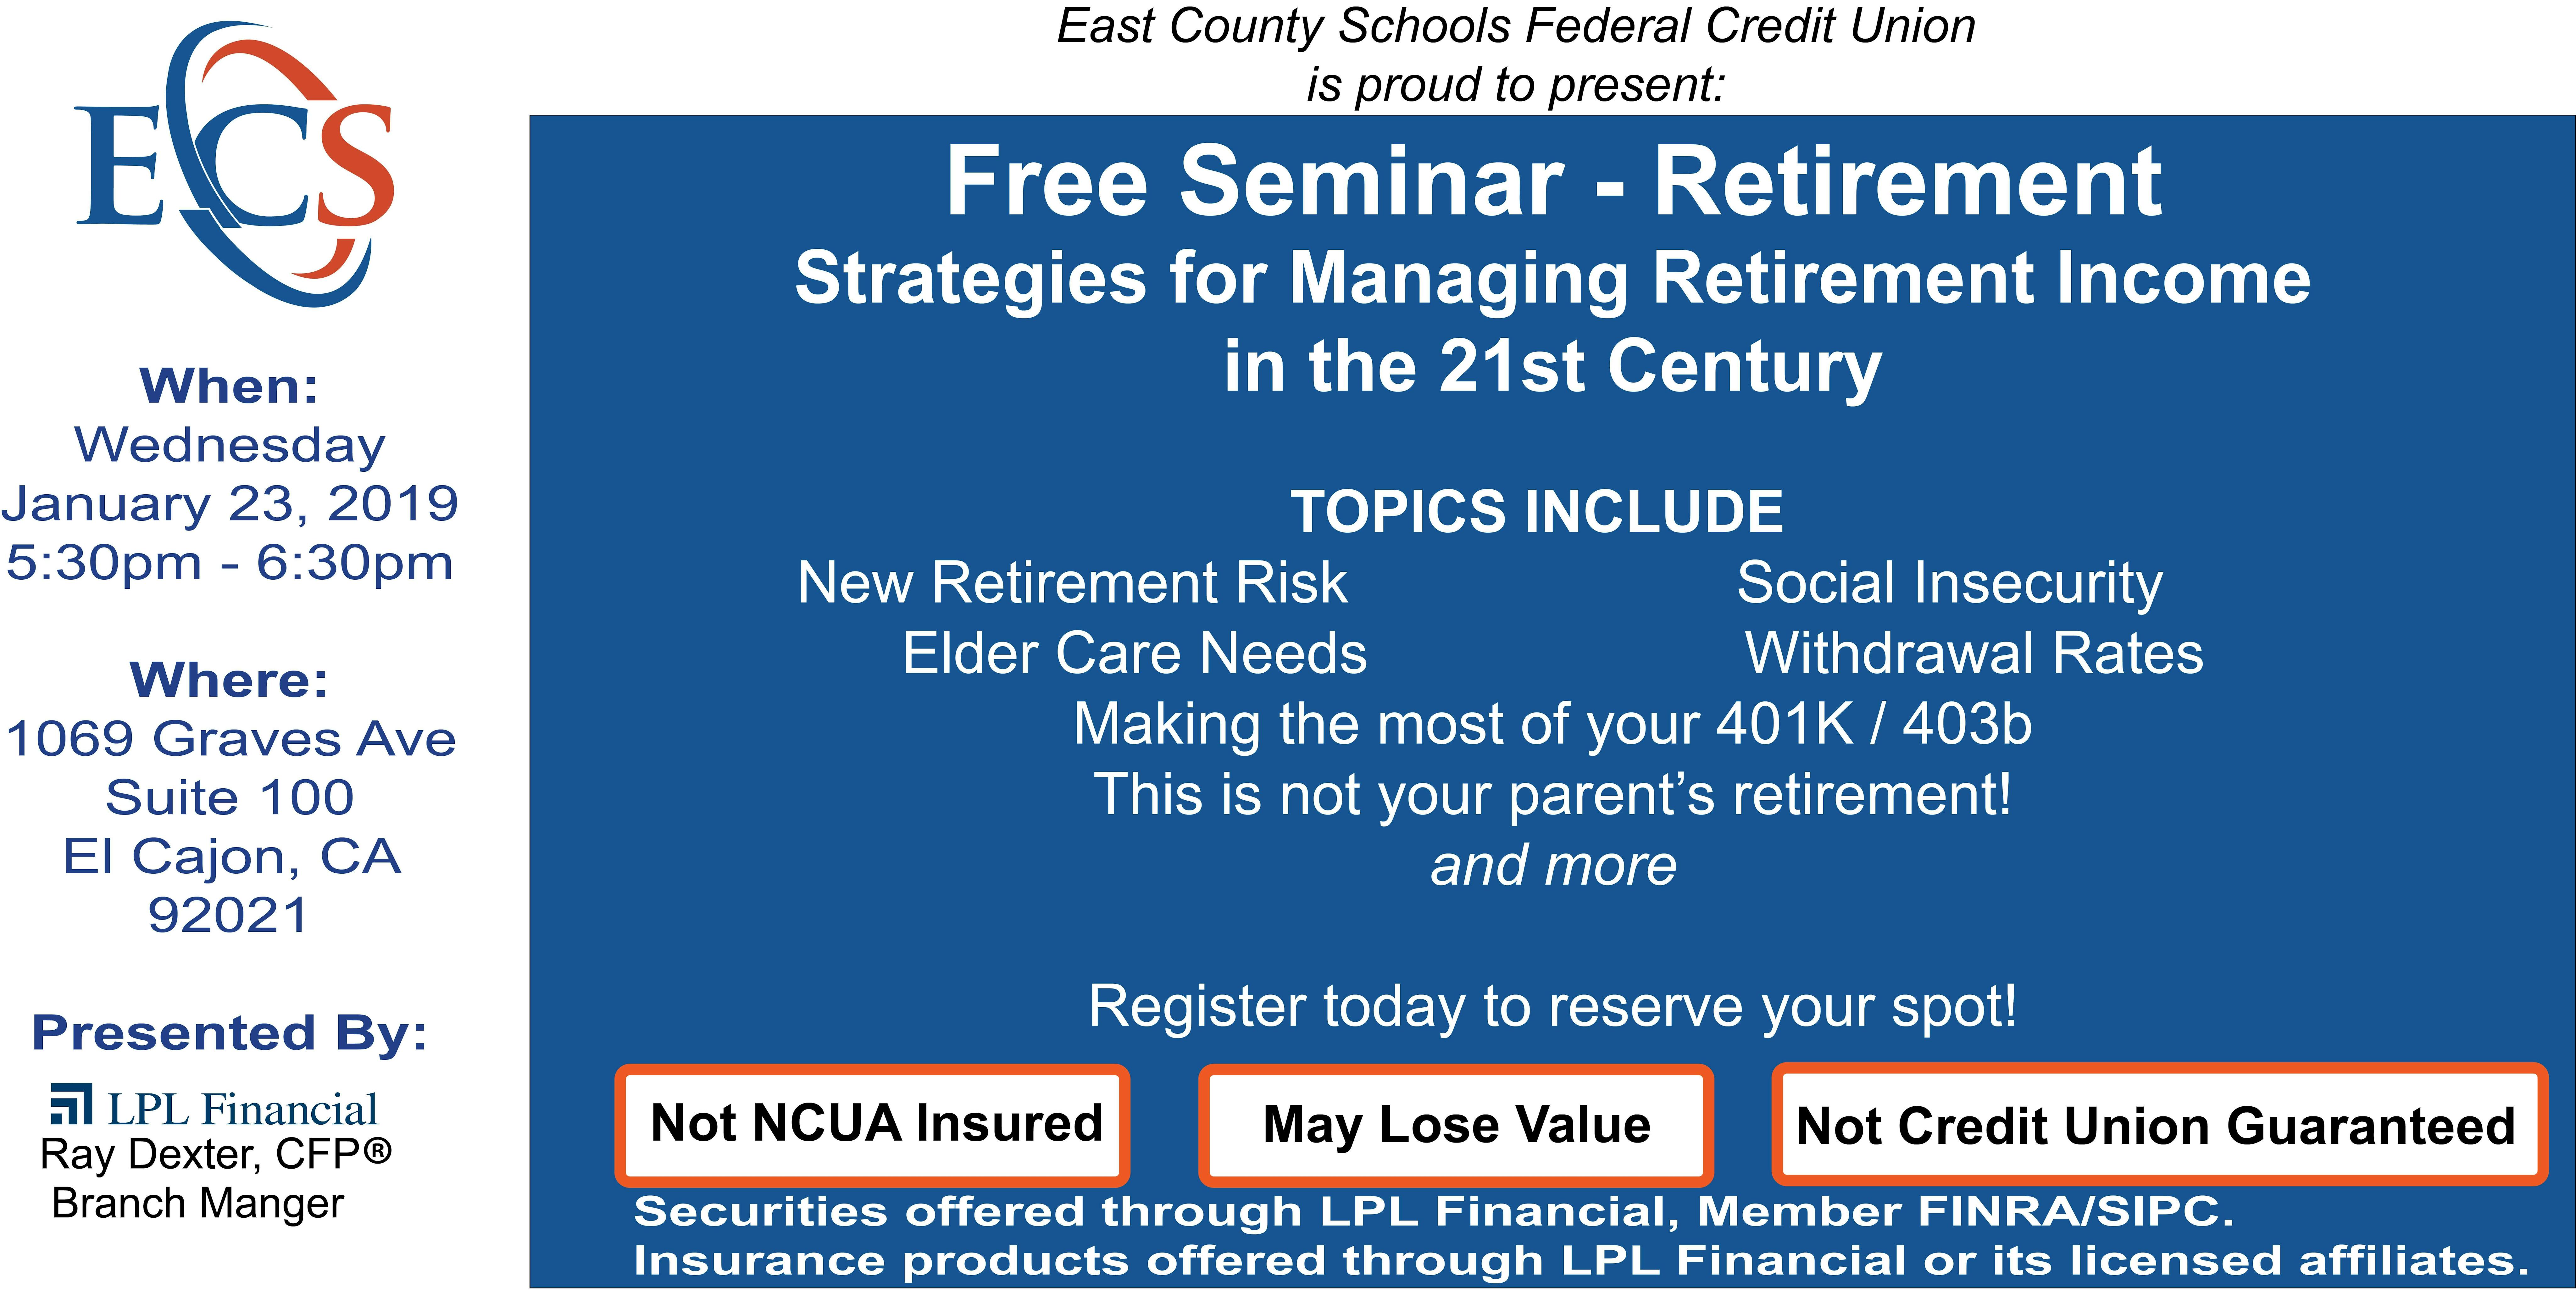 free seminar - retirement strategies for managing retirement income